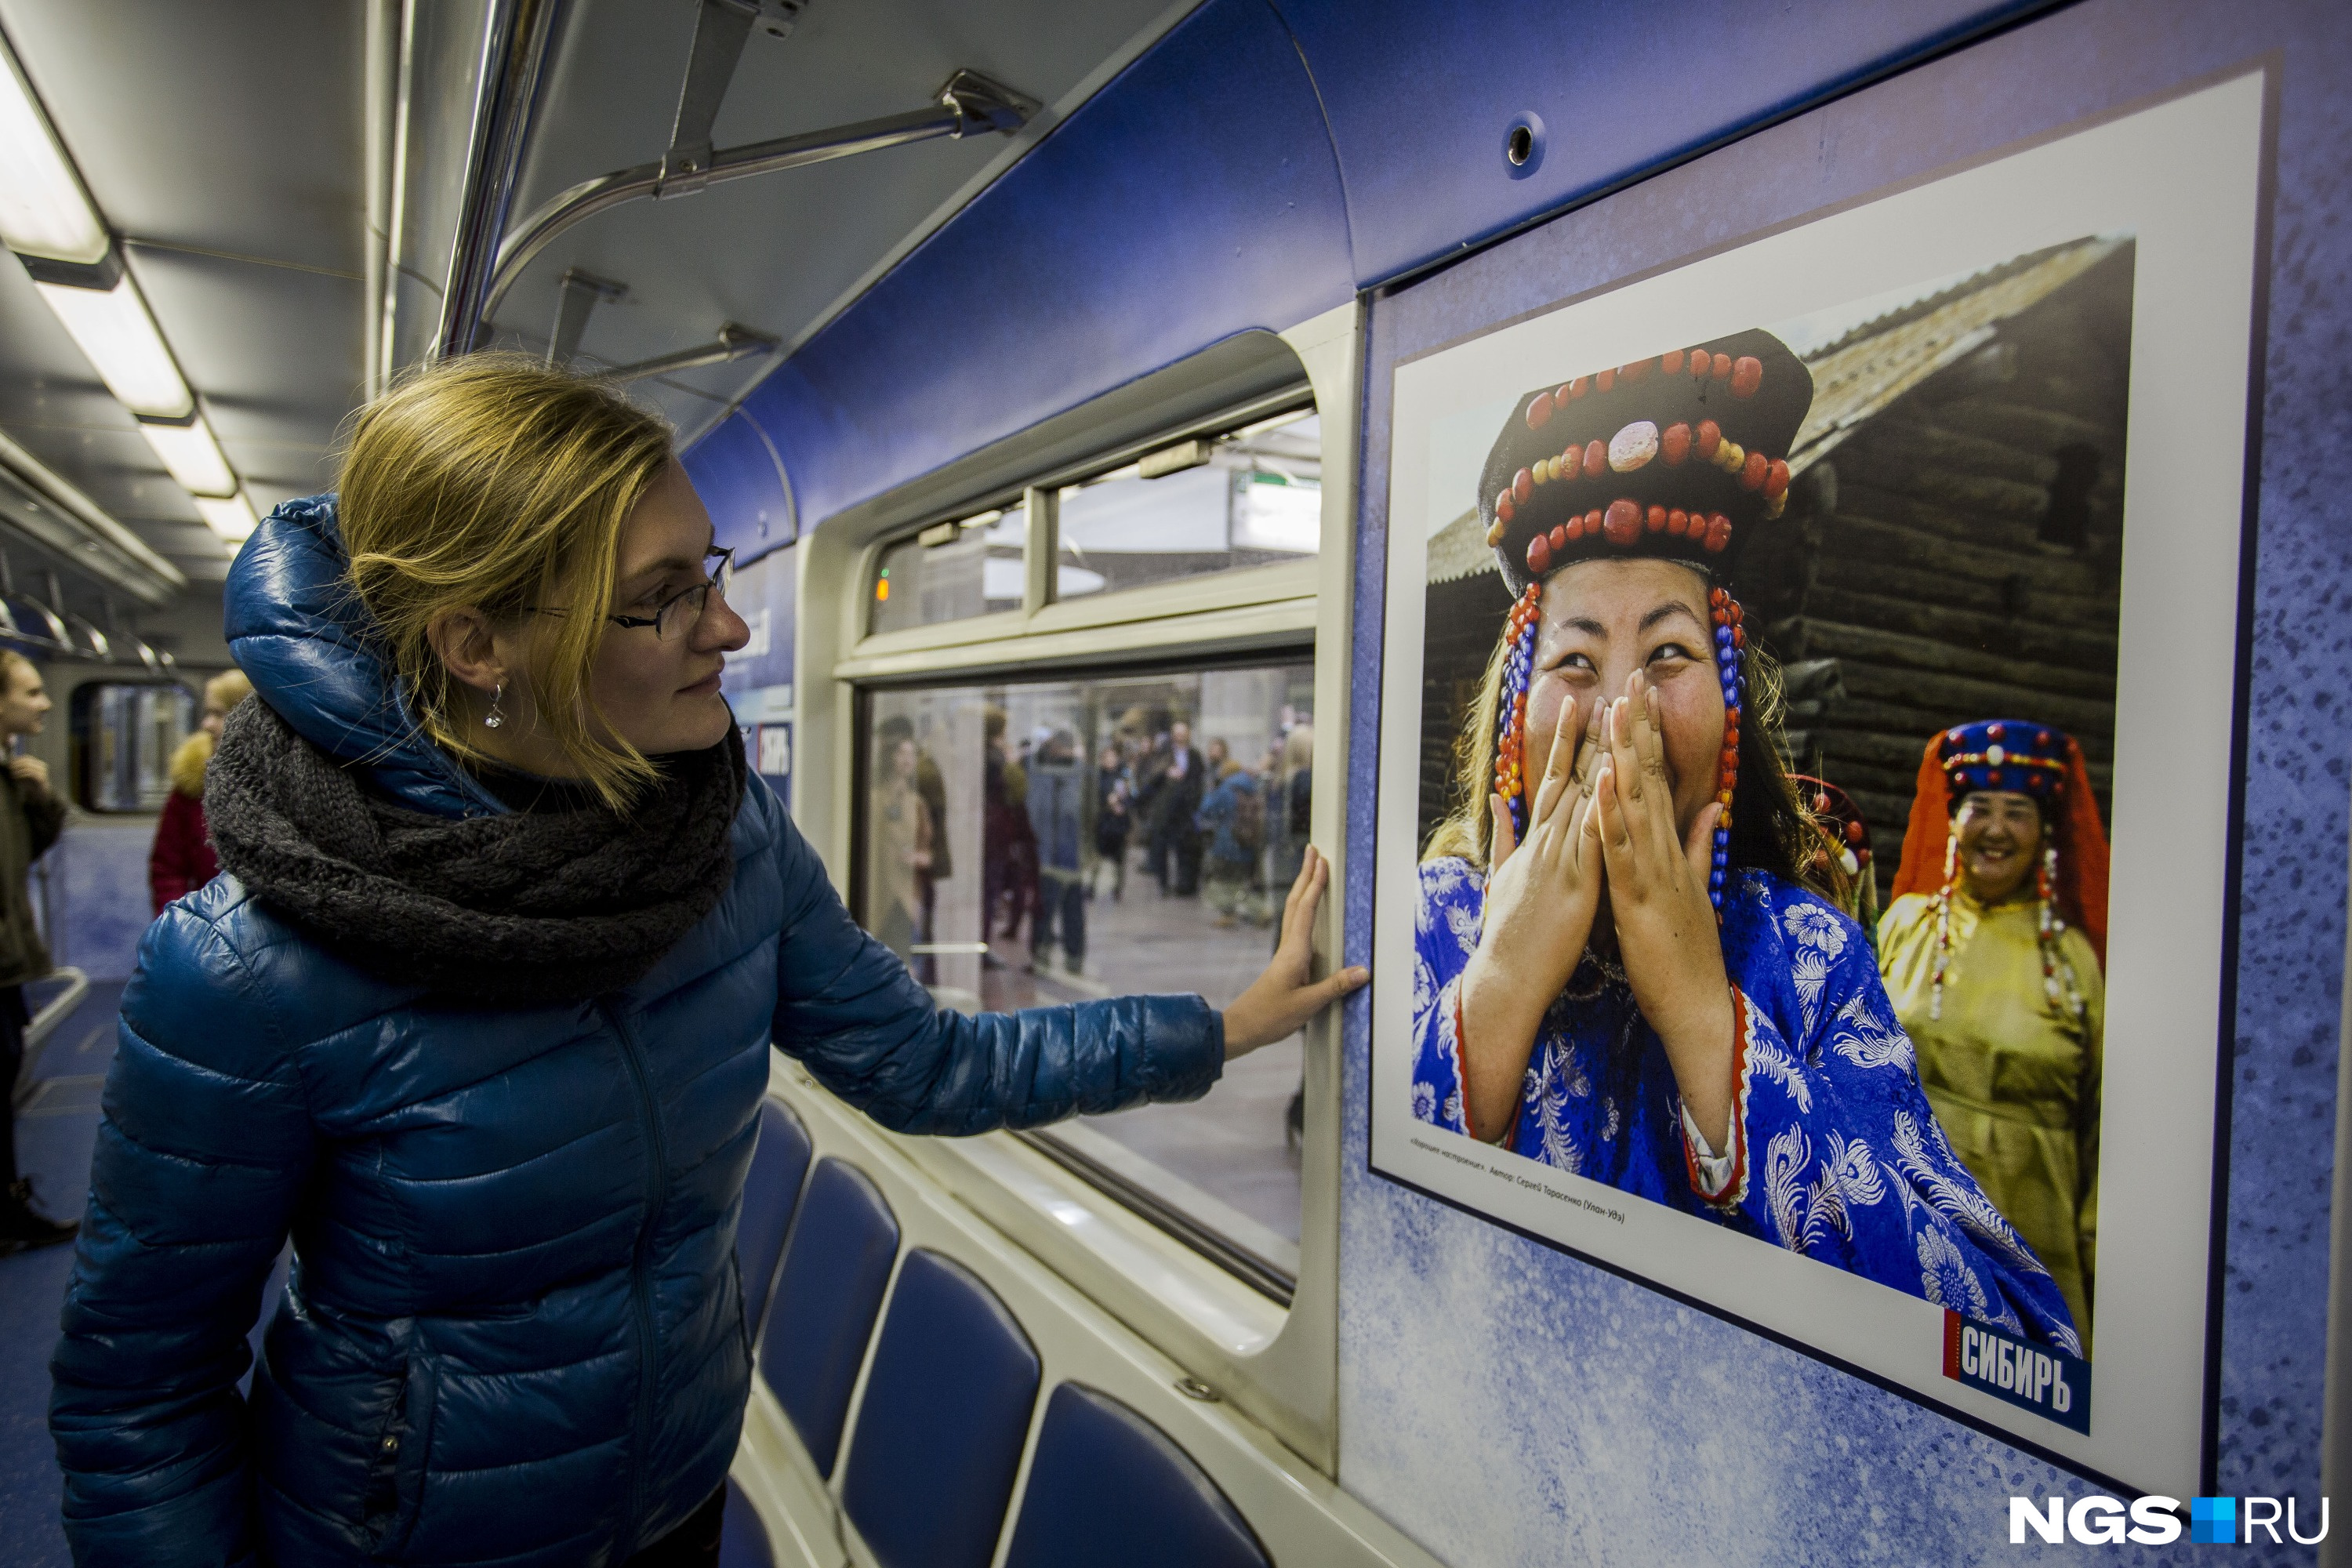 Поезд-галерея с фотографиями Сибири вышел на линию 18 апреля